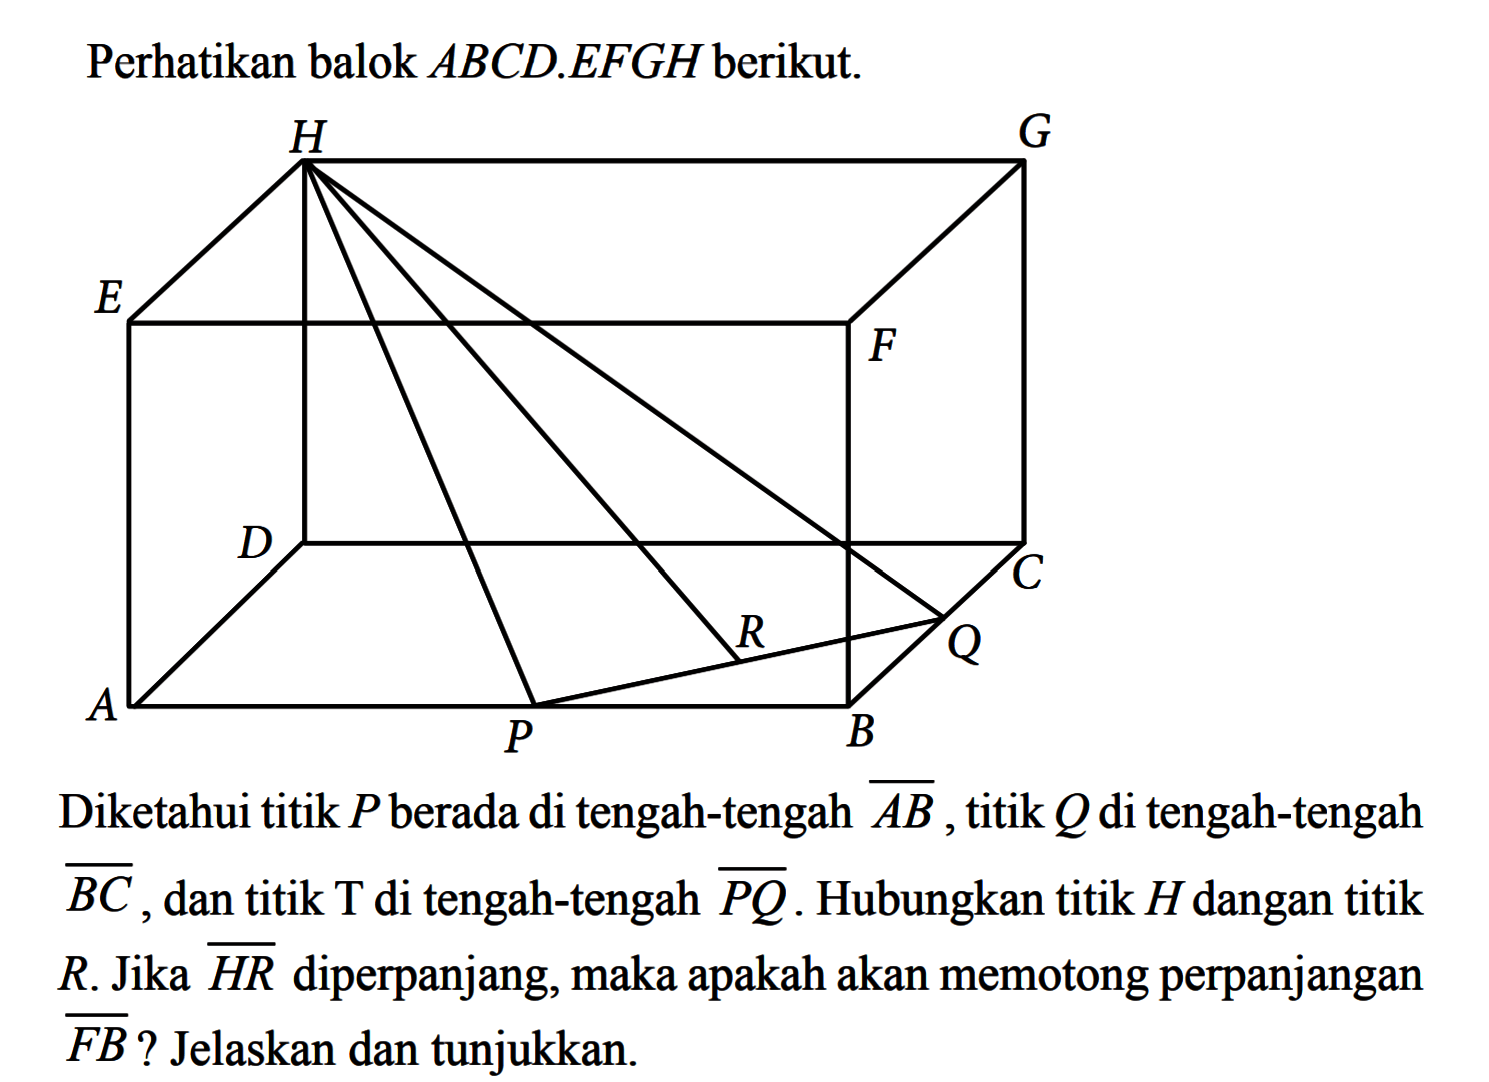 Perhatikan balok ABCD.EFGH berikut. Diketahui titik P berada di tengah-tengah garis AB, titik Q di tengah-tengah garis BC, dan titik T di tengah-tengah garis PQ. Hubungkan titik H dengan titik R. Jika garis HR diperpanjang, maka apakah akan memotong perpanjangan garis FB? Jelaskan dan tunjukkan.